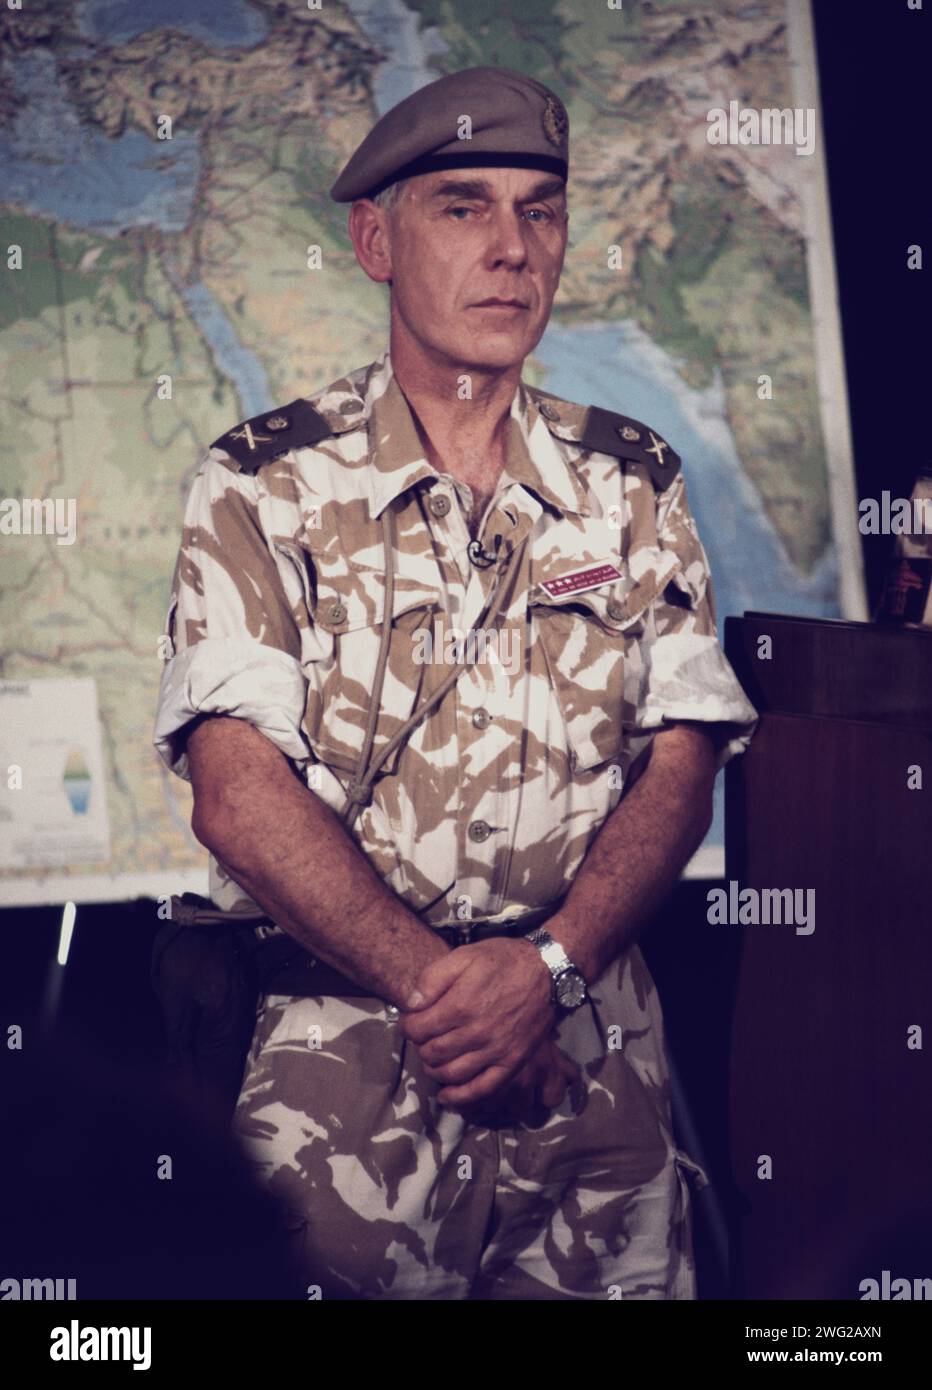 7 février 1991 le général Sir Peter de la Billière donne une conférence de presse à Riyad pendant la préparation de la guerre avec l'Irak. Banque D'Images